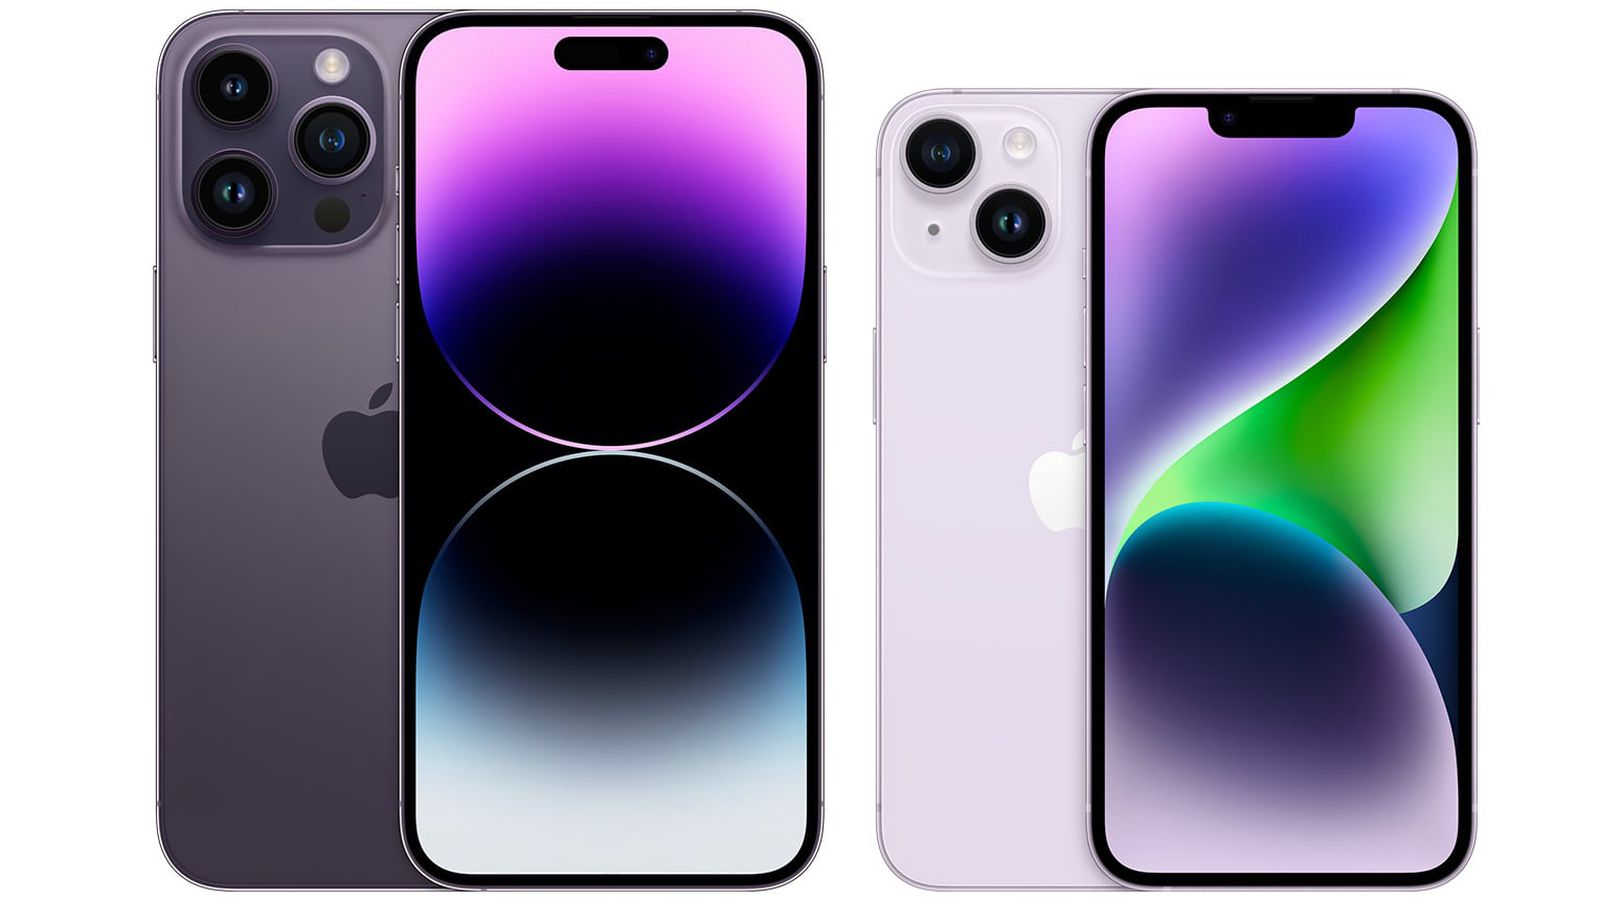 iPhone 14 purple: Màu tím huyền bí của iPhone 14 sẽ đưa bạn đến một trải nghiệm đầy màu sắc và cá tính. Bạn sẽ không thể rời mắt khỏi công nghệ tiên tiến và thiết kế thời trang của sản phẩm này. Cùng xem qua những hình ảnh về iPhone 14 trong gam màu tím để cảm nhận độ đẹp và sang trọng của nó.